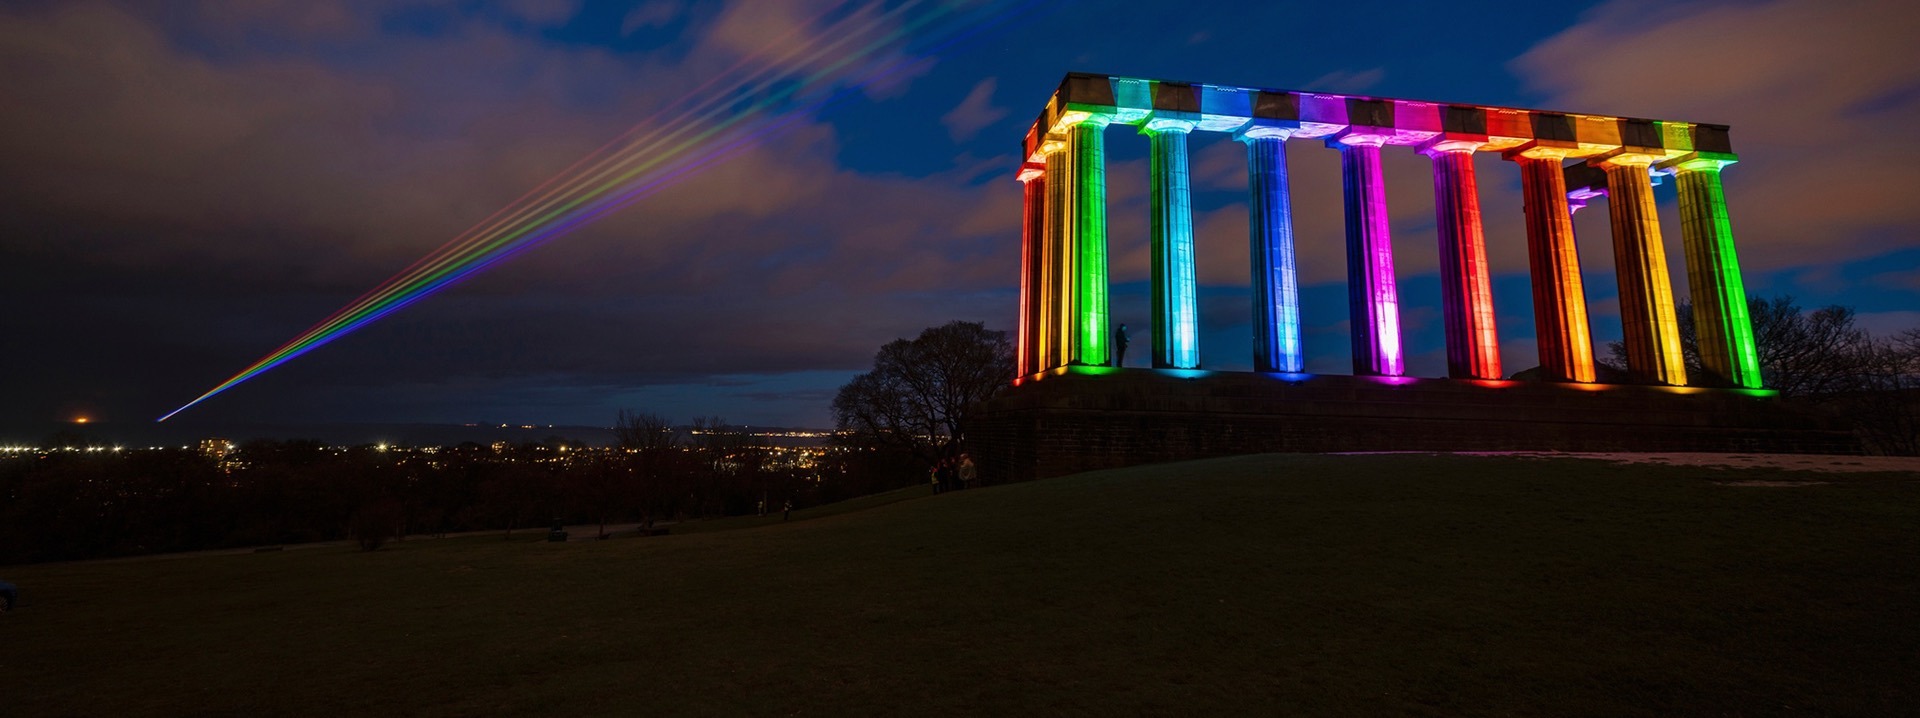 Das National Monument of Scotland wird bei Nacht in Regenbogenfarben angestrahlt.